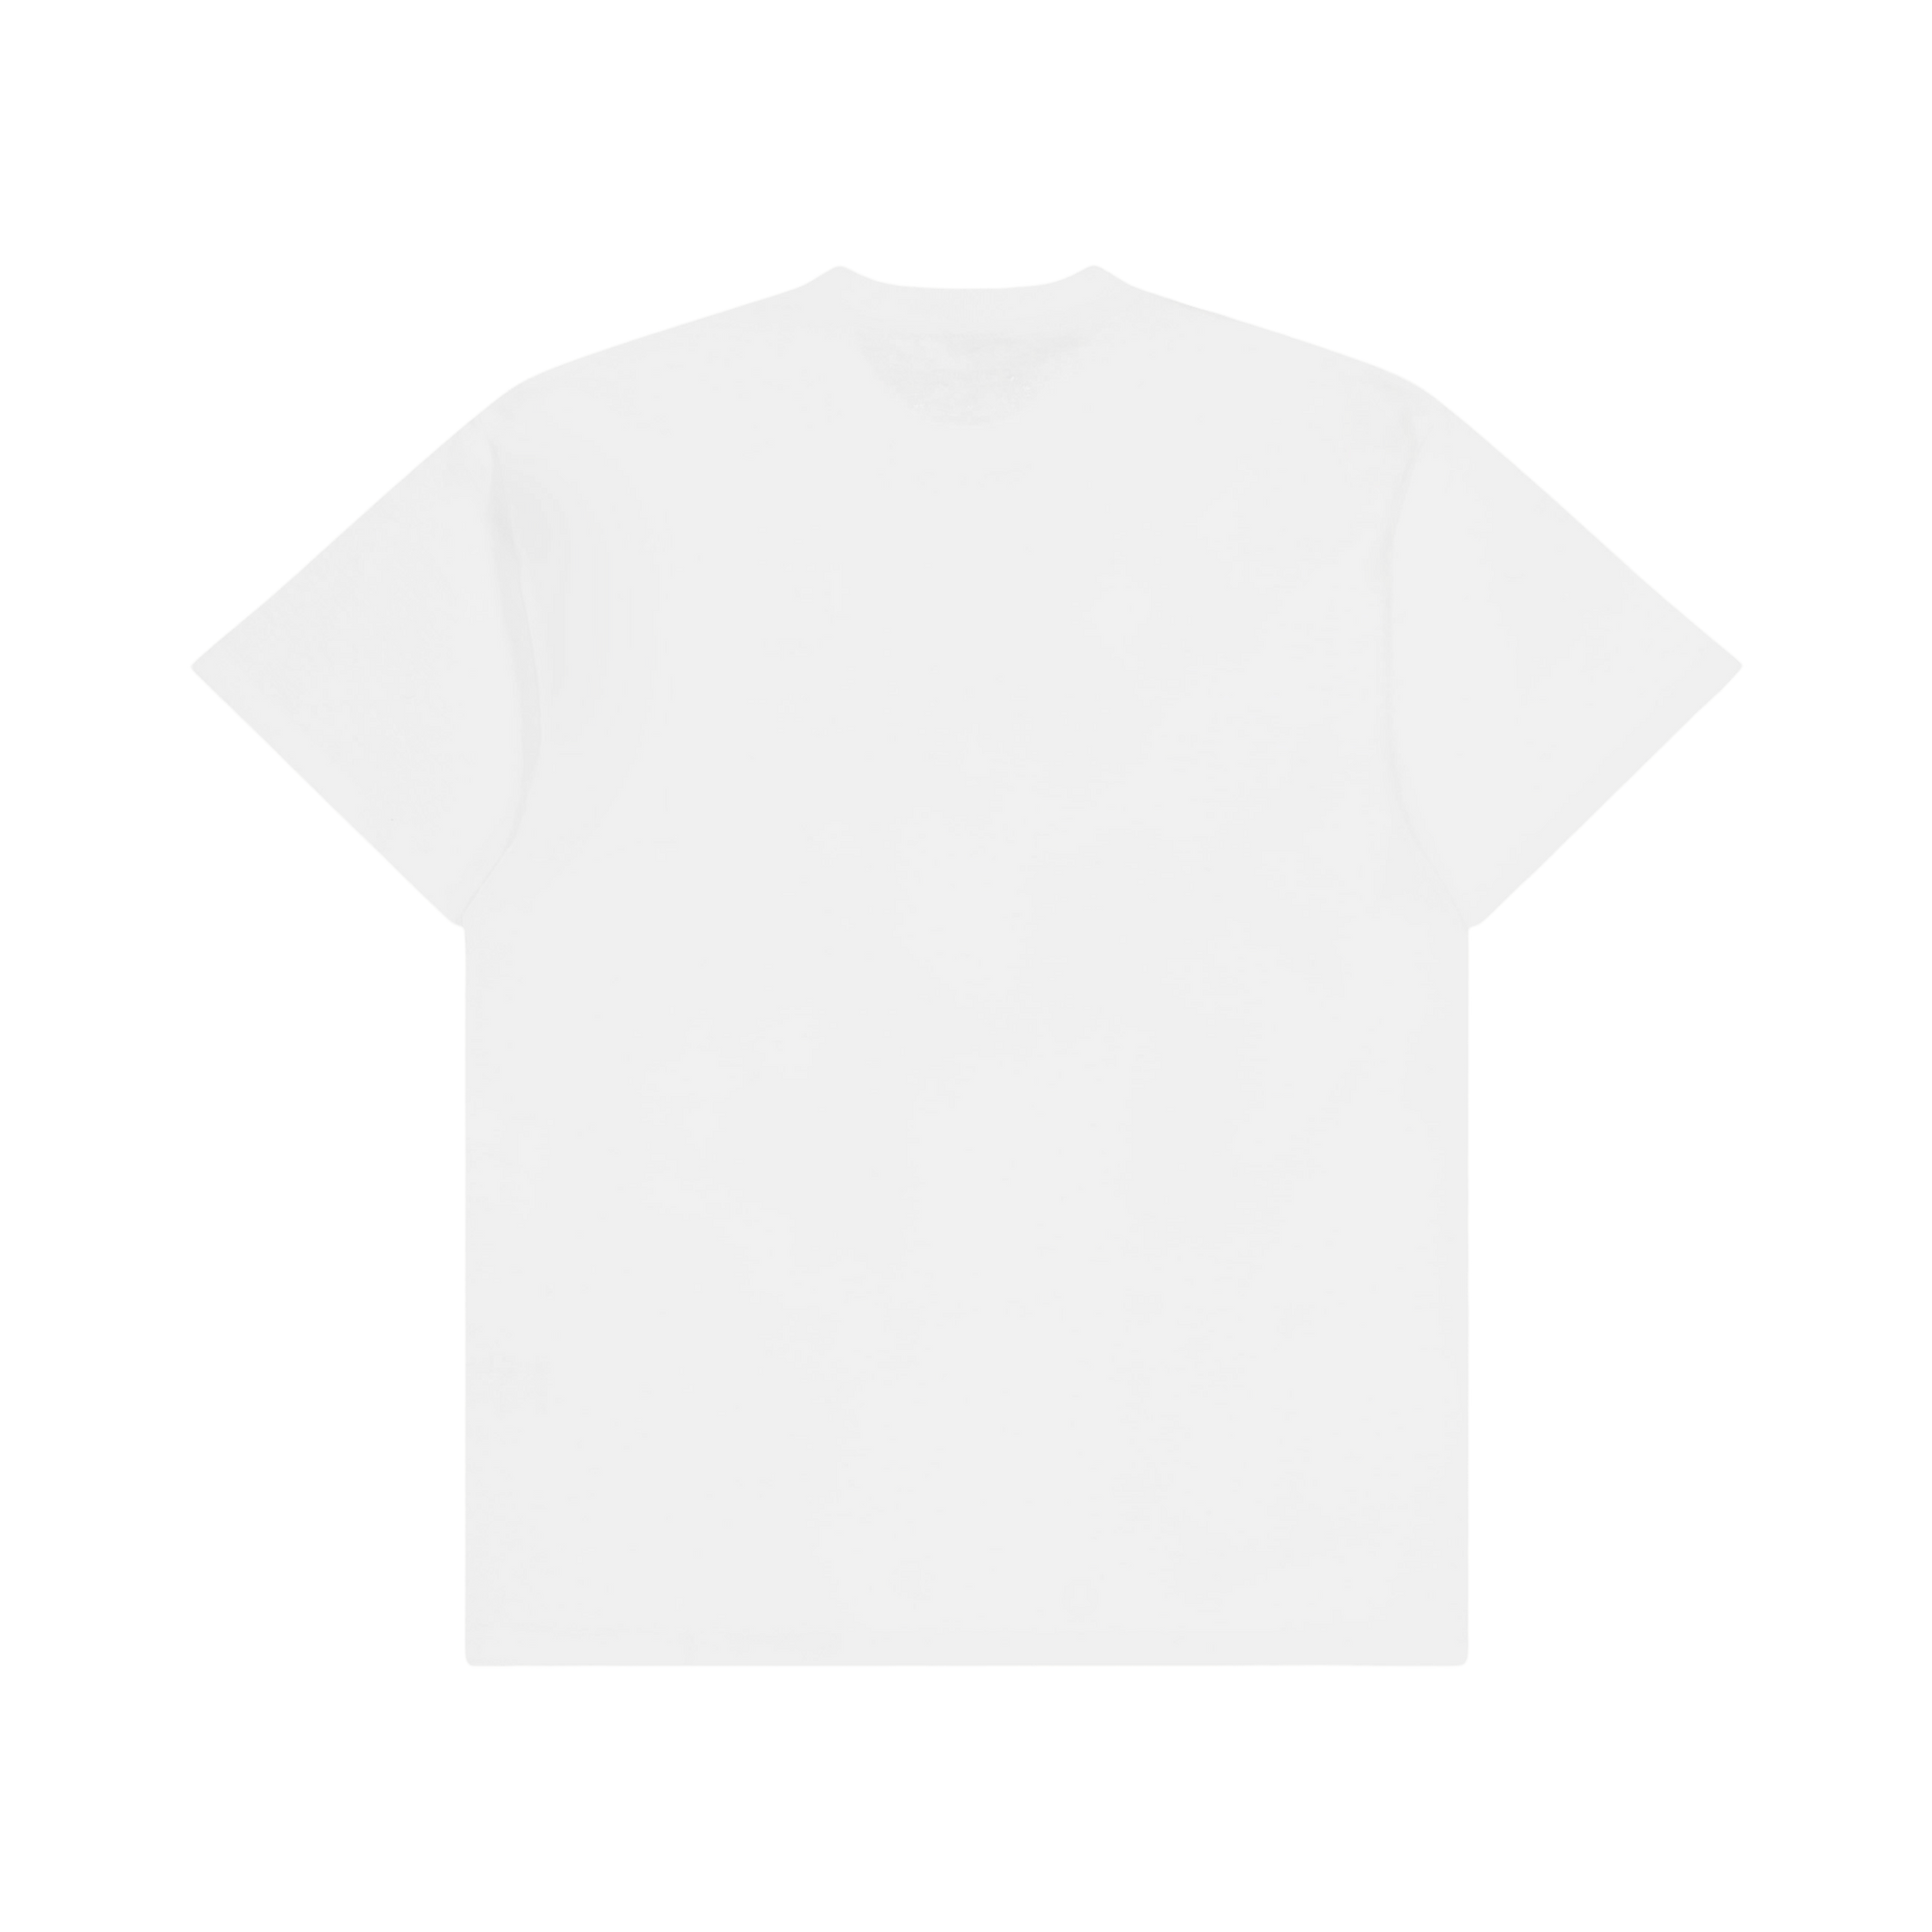 S/s Onyx T-shirt White / Black